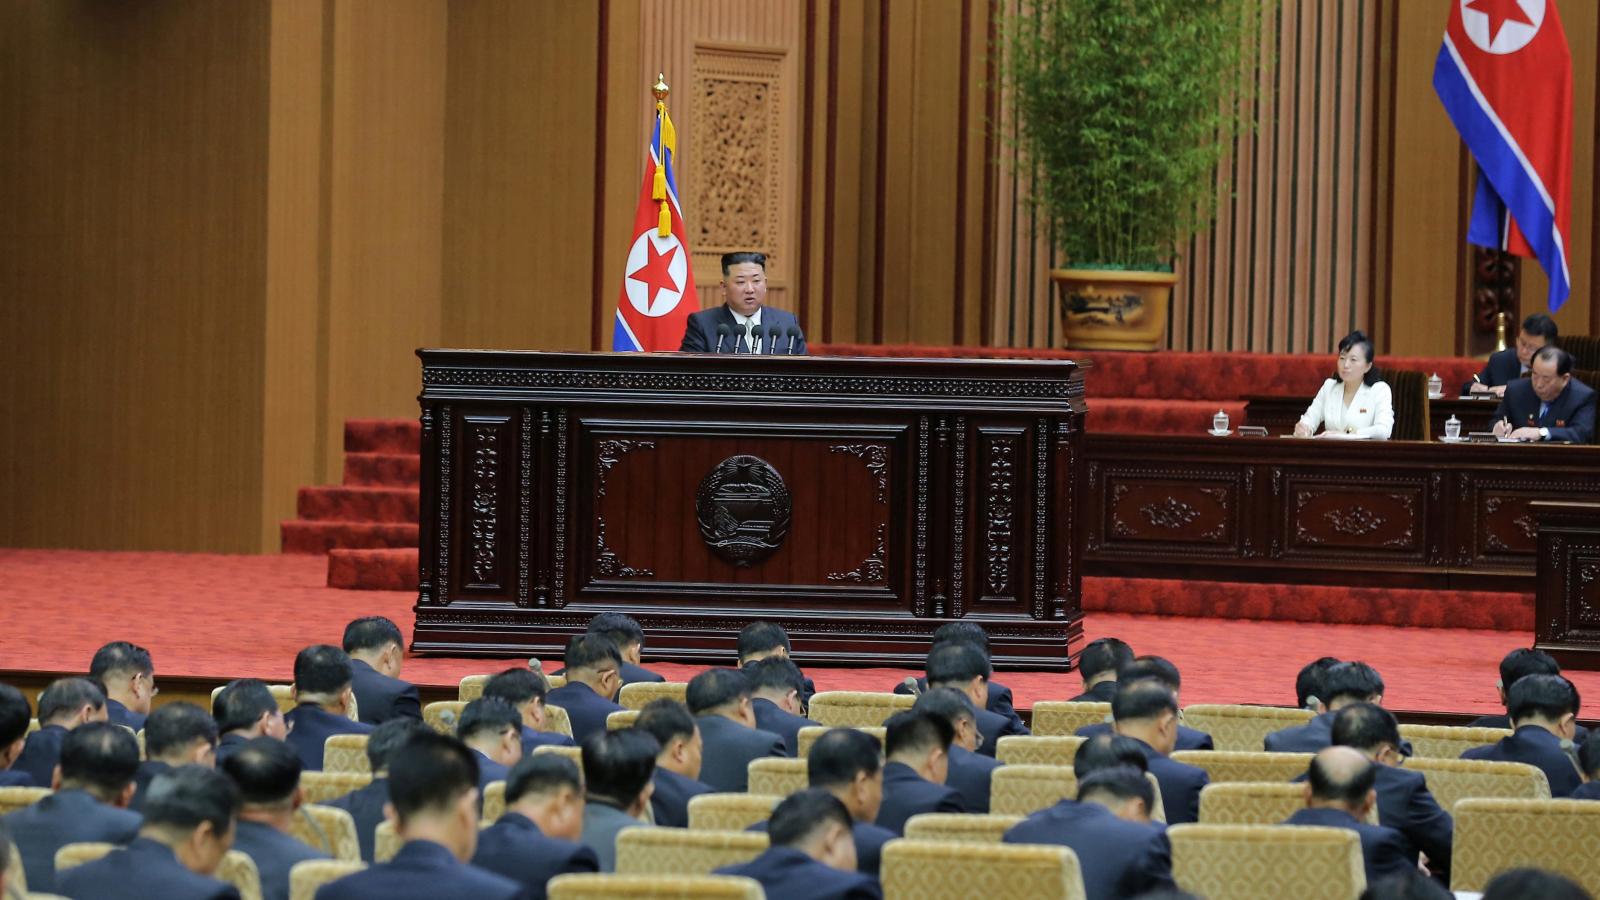 كوريا الشمالية تكرس بدستورها وضعها كدولة نووية